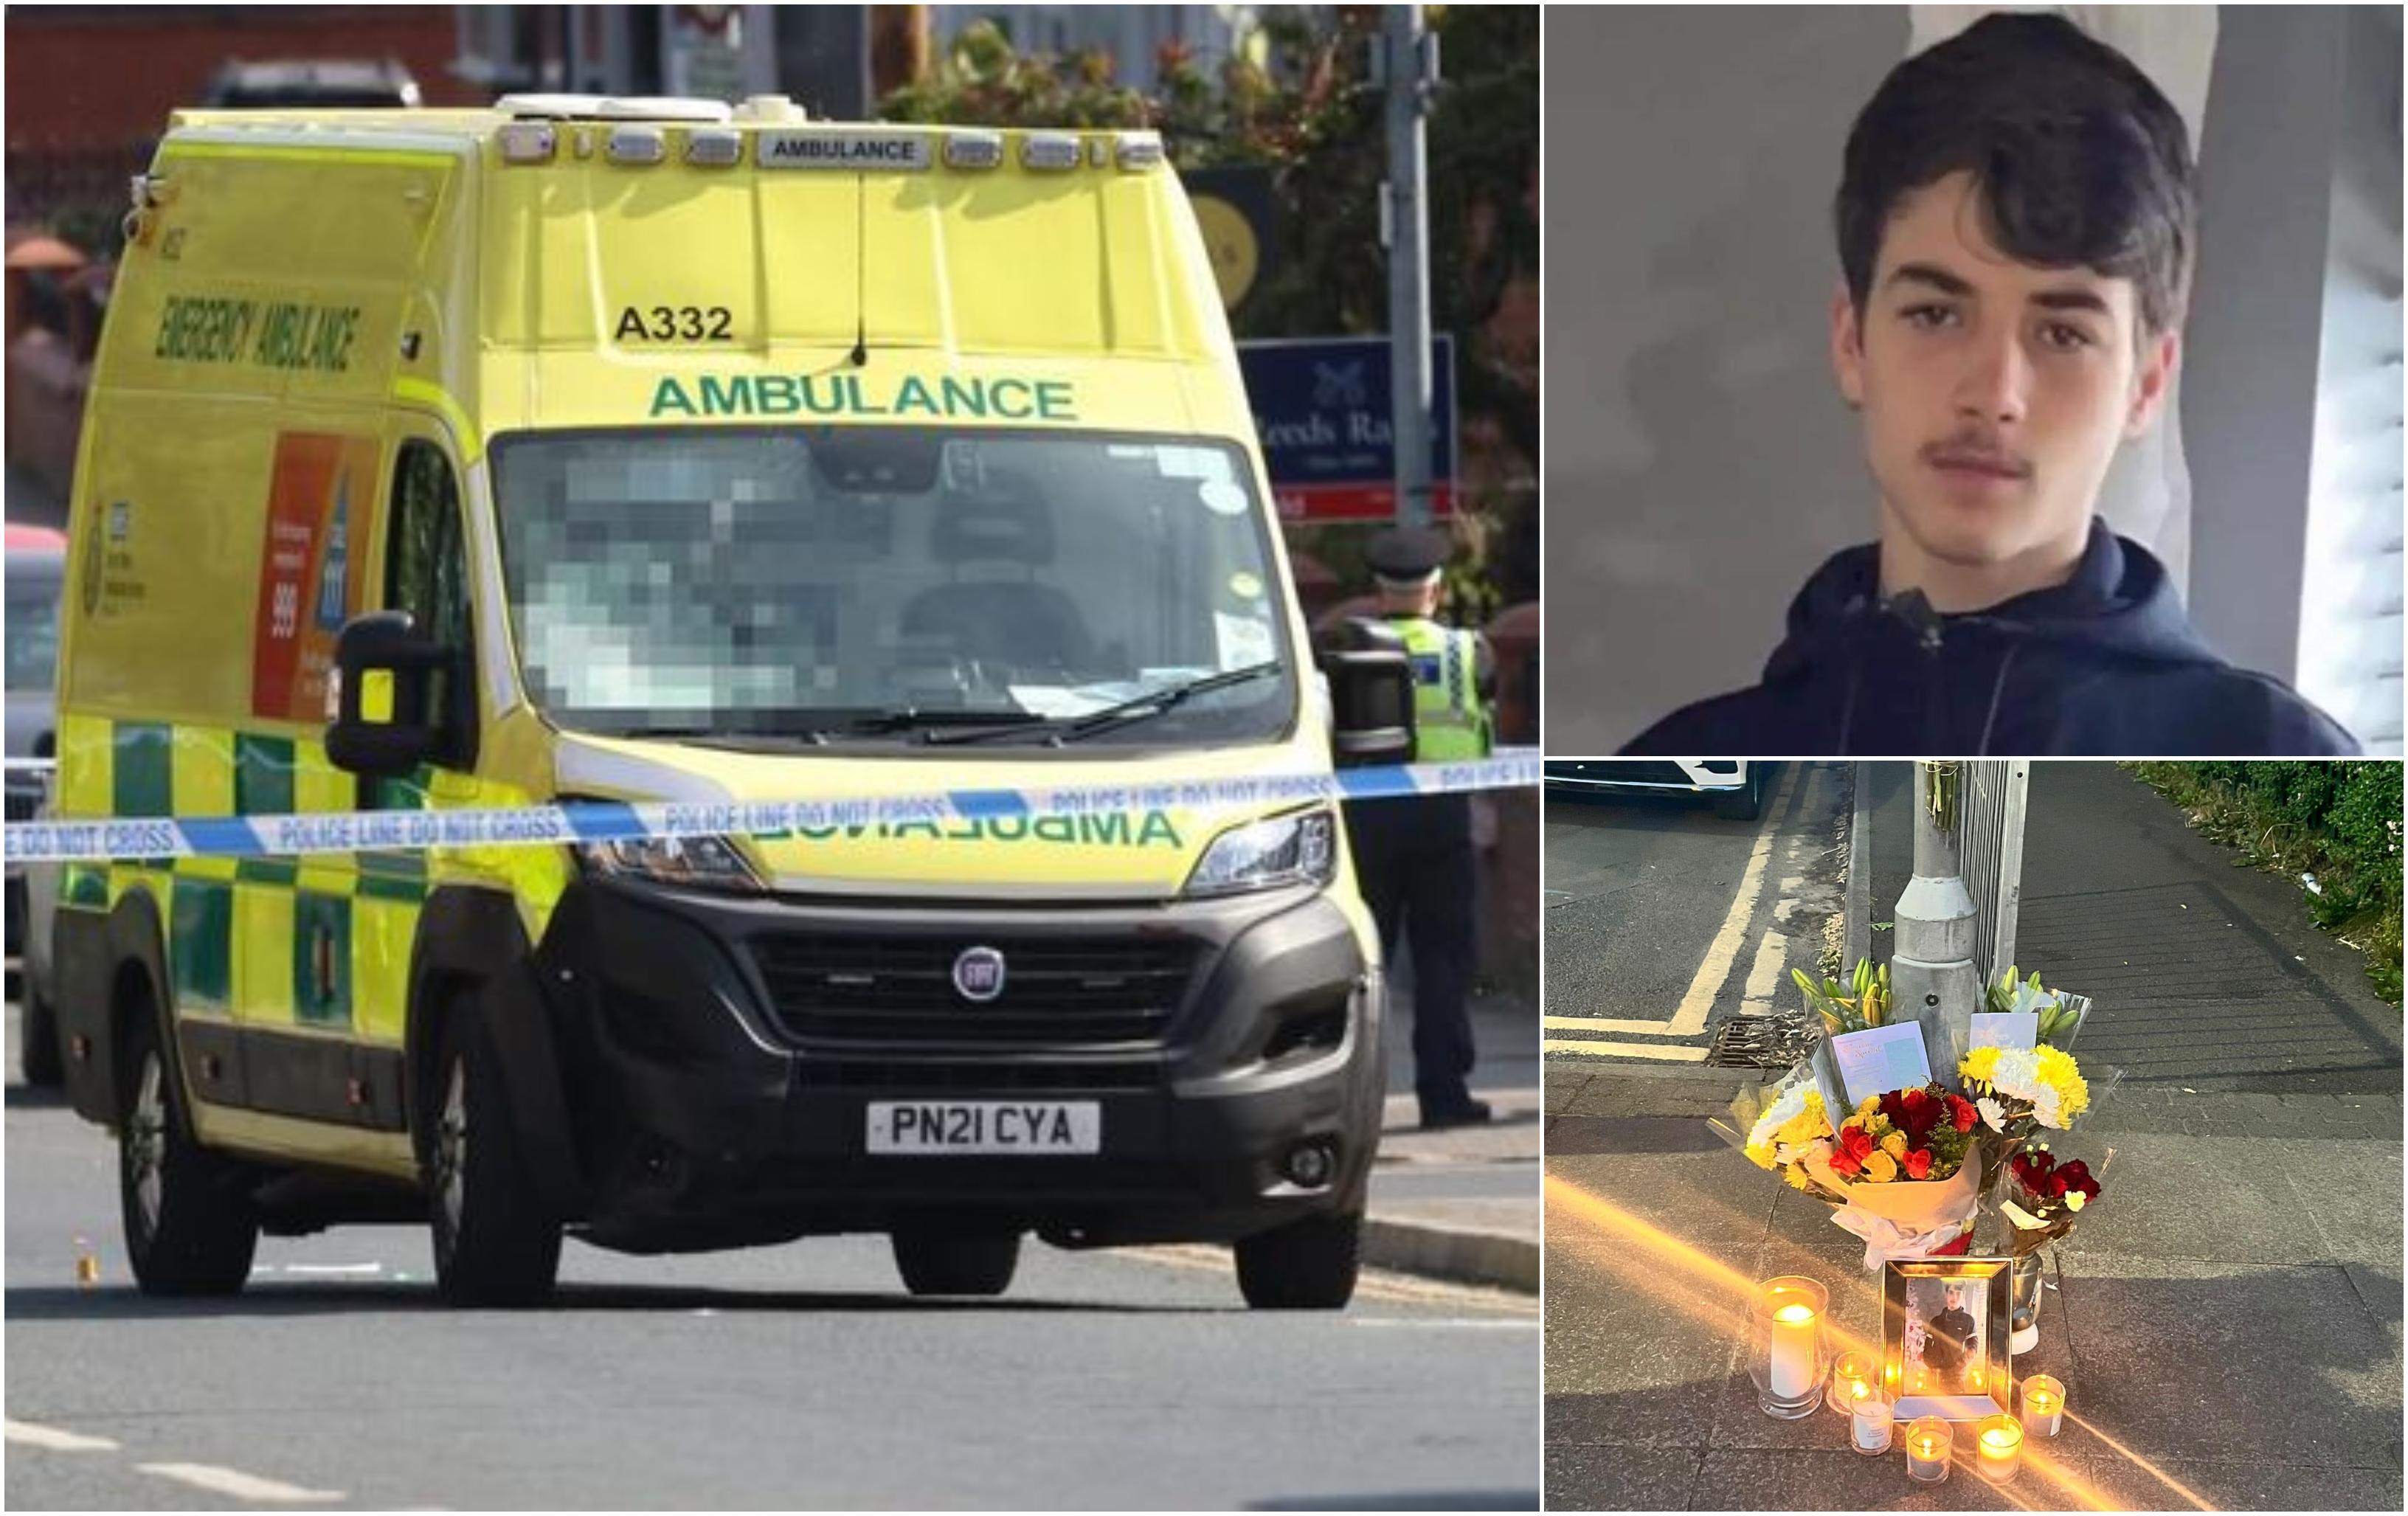 Băiat de 15 ani, mort după ce a intrat cu viteză cu bicicleta într-o ambulanţă parcată, în UK